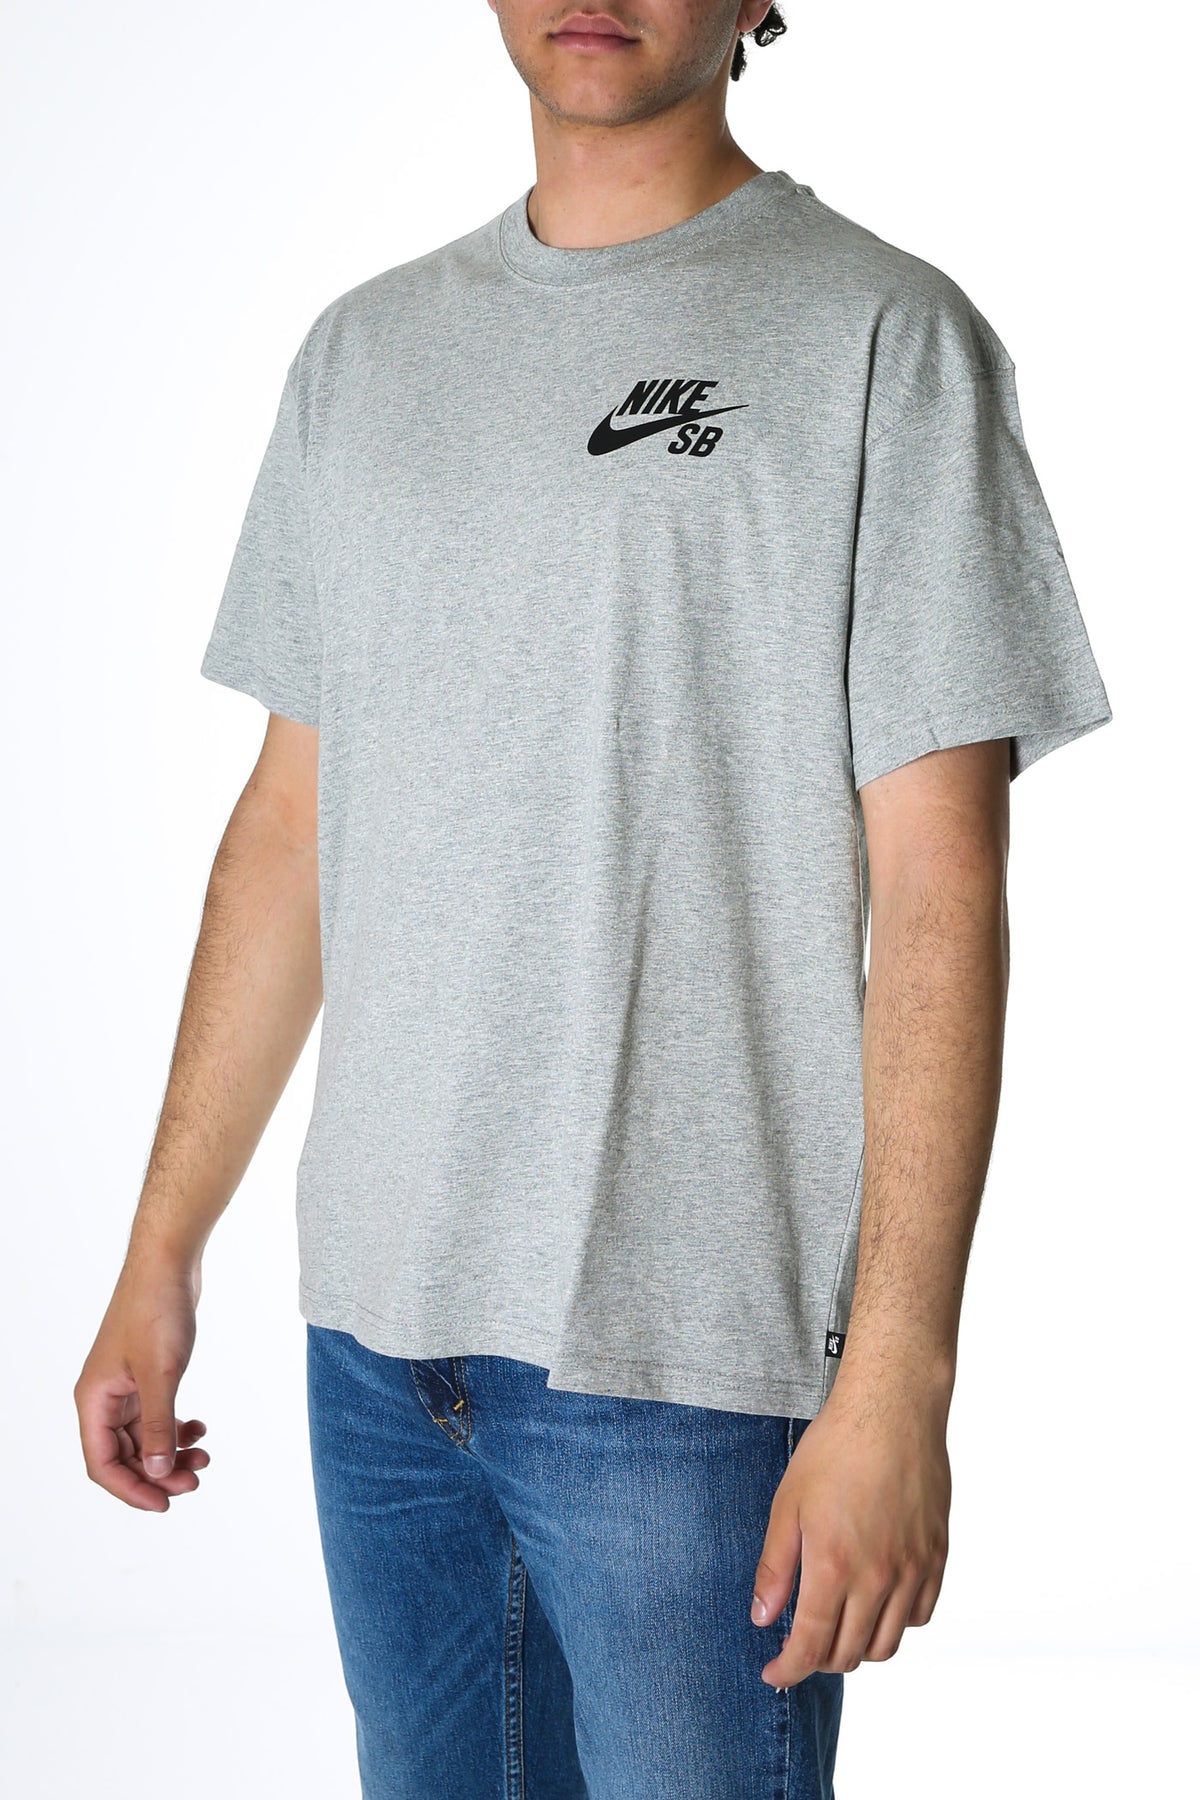 Nike SB, Raglan Skate T-Shirt